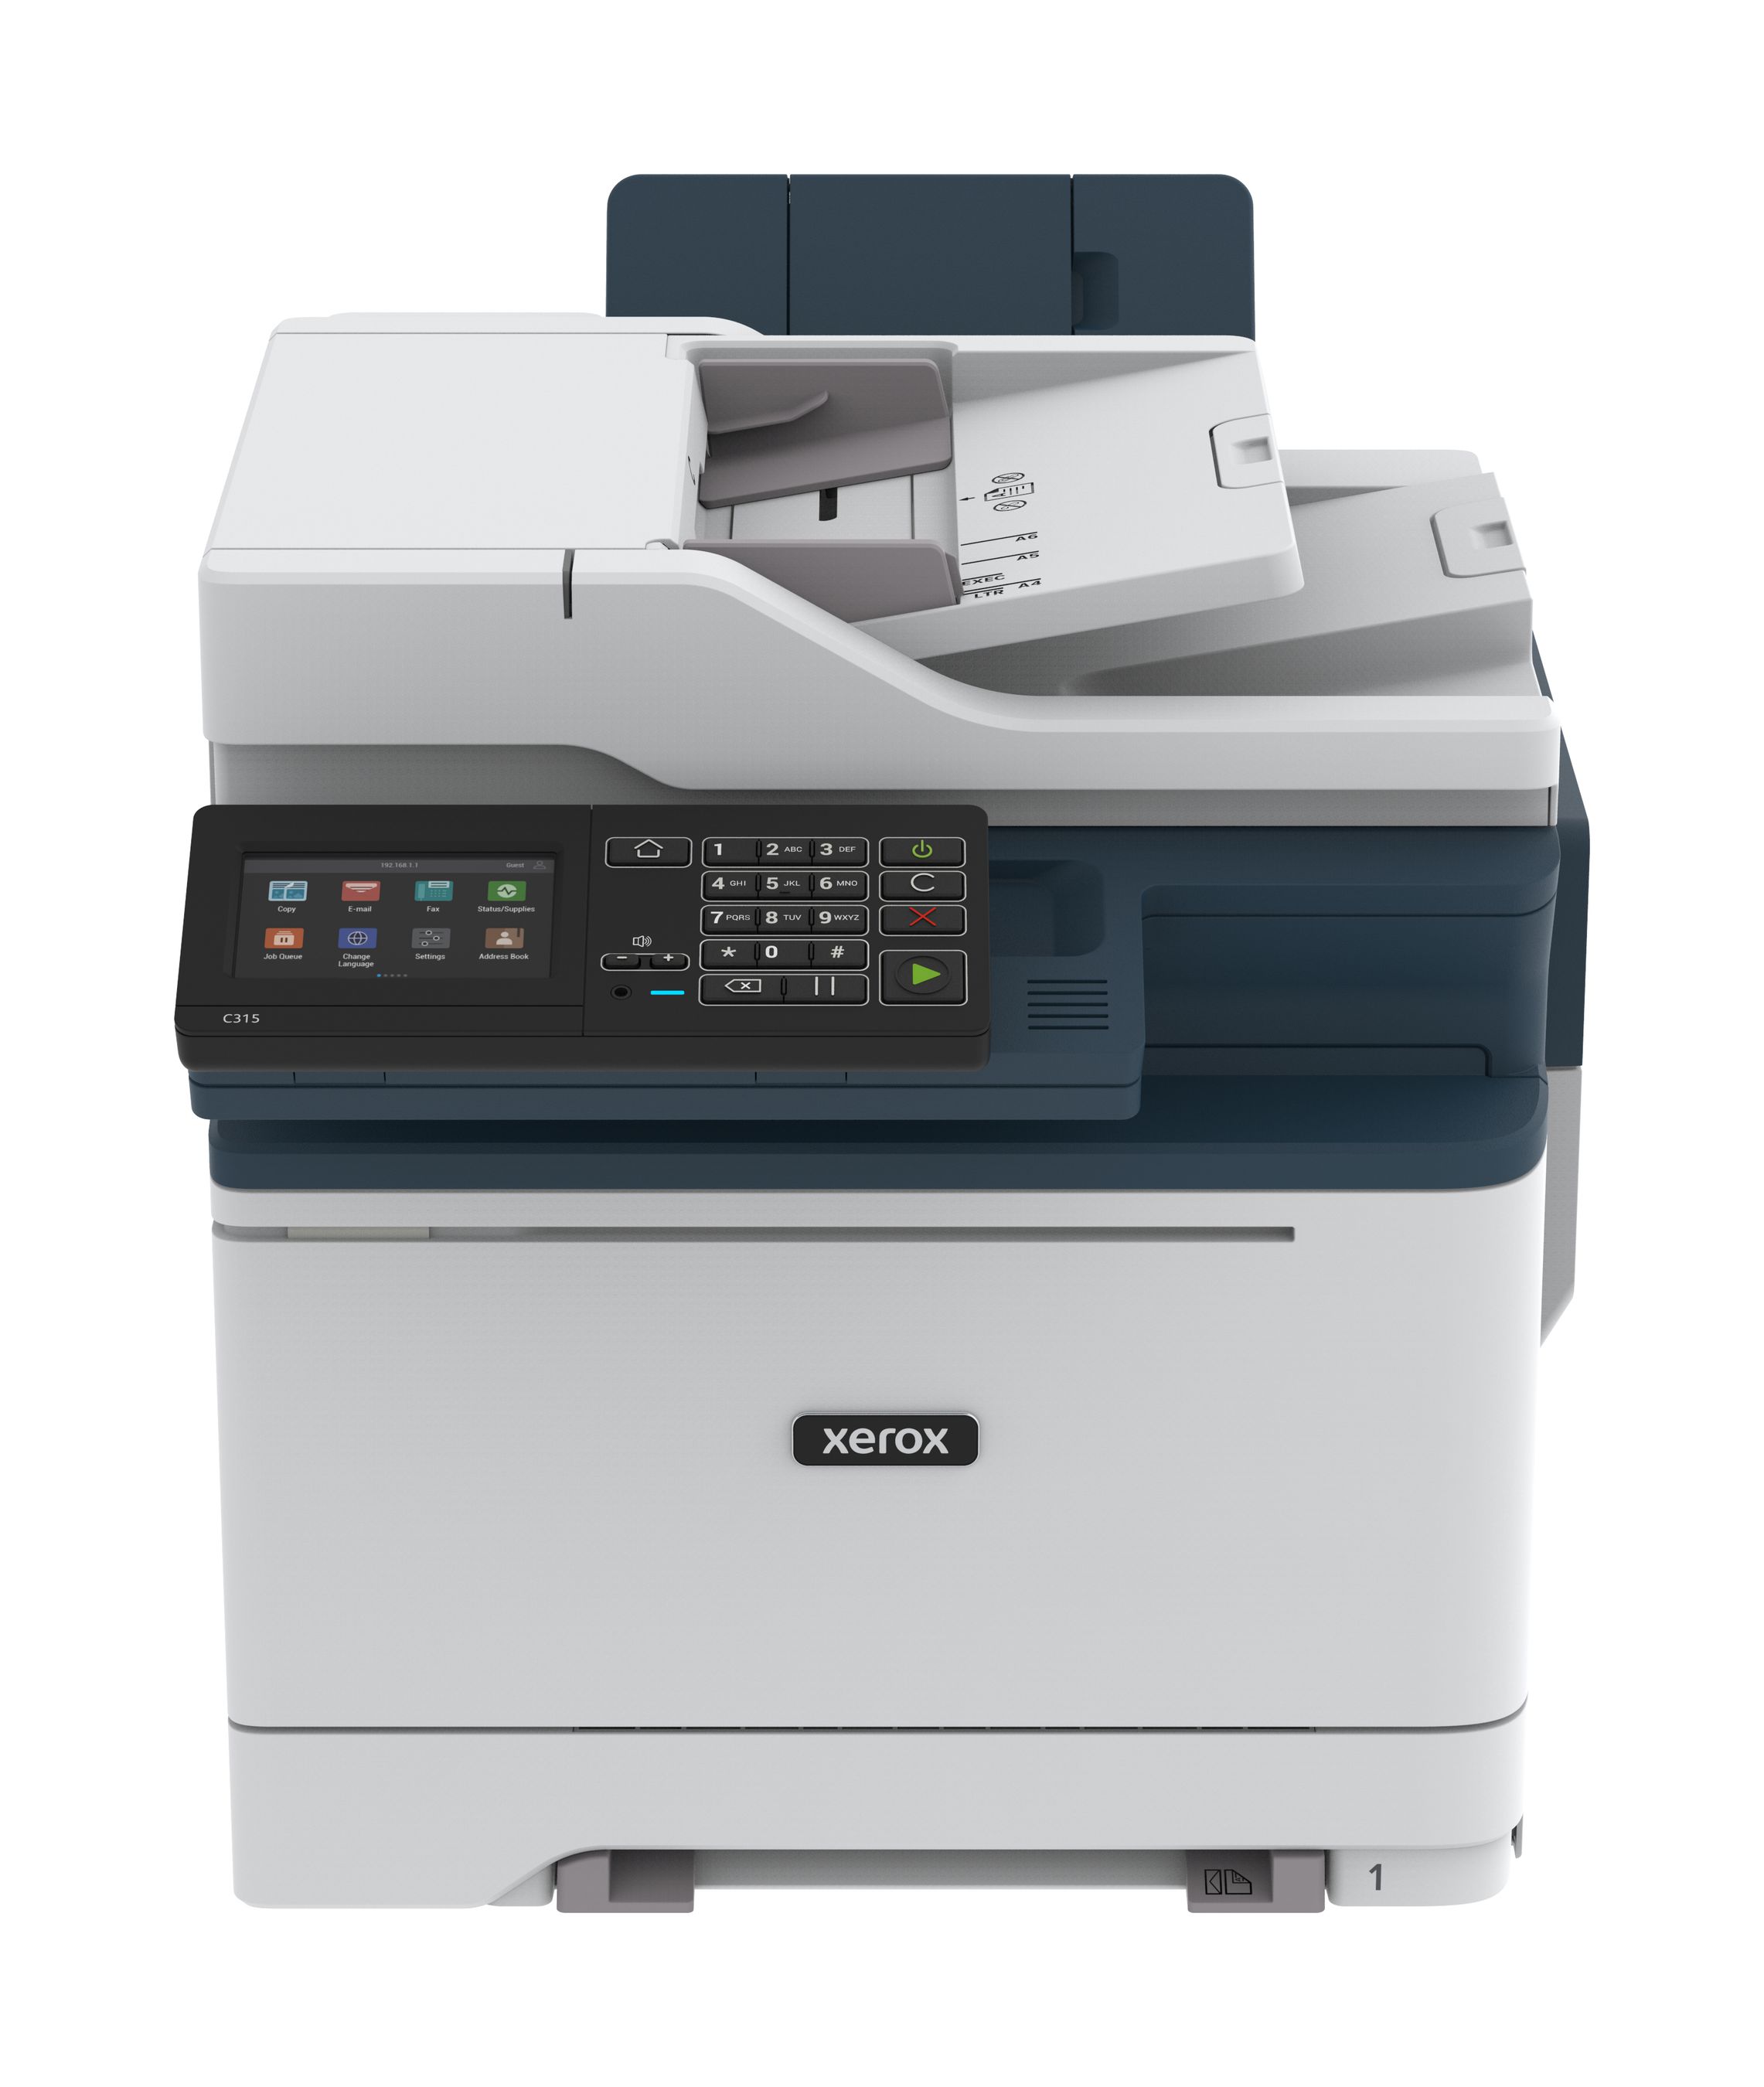 Xerox C315 Imprimante recto verso sans fil A4 33 ppm, PS3 PCL5e/6